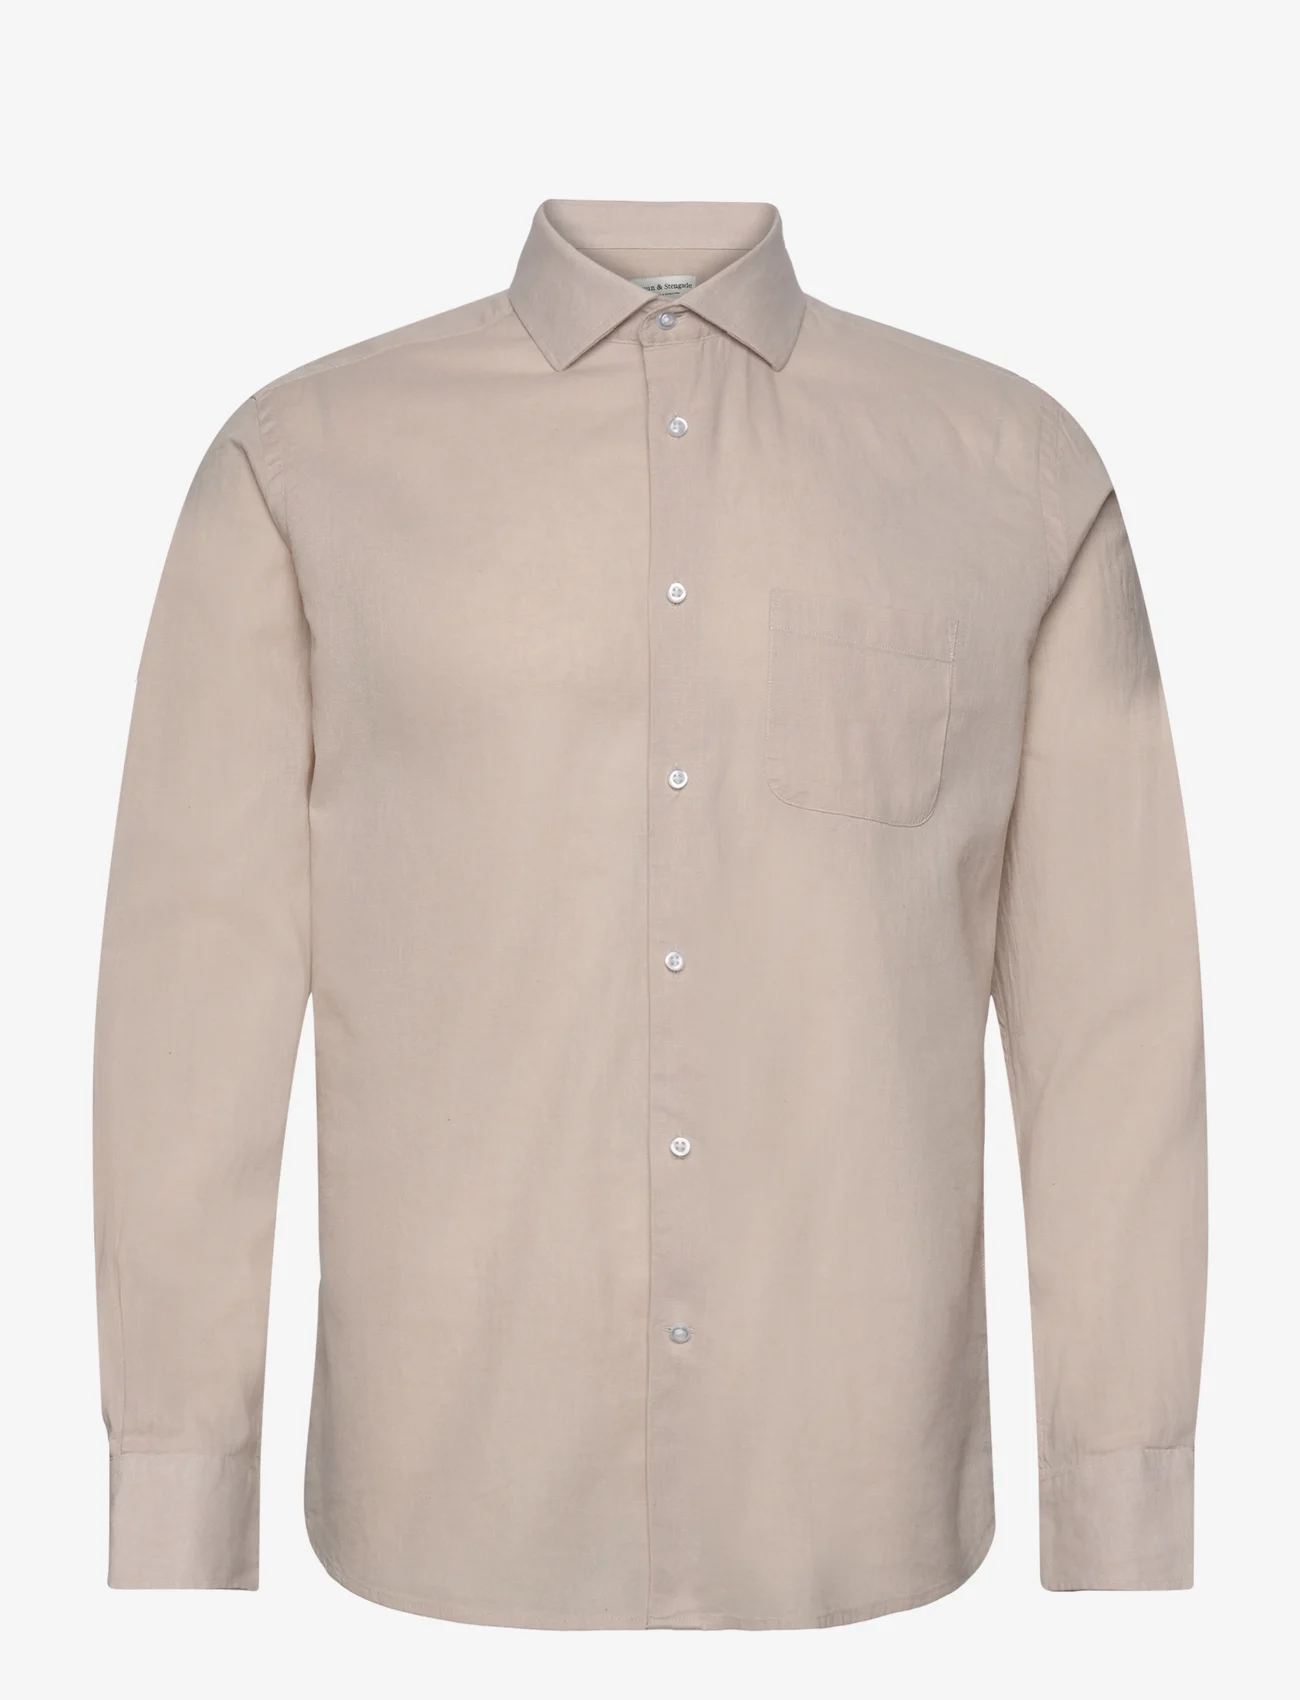 Bruun & Stengade - BS Ferrol Casual Slim Fit Shirt - linneskjortor - kit - 0